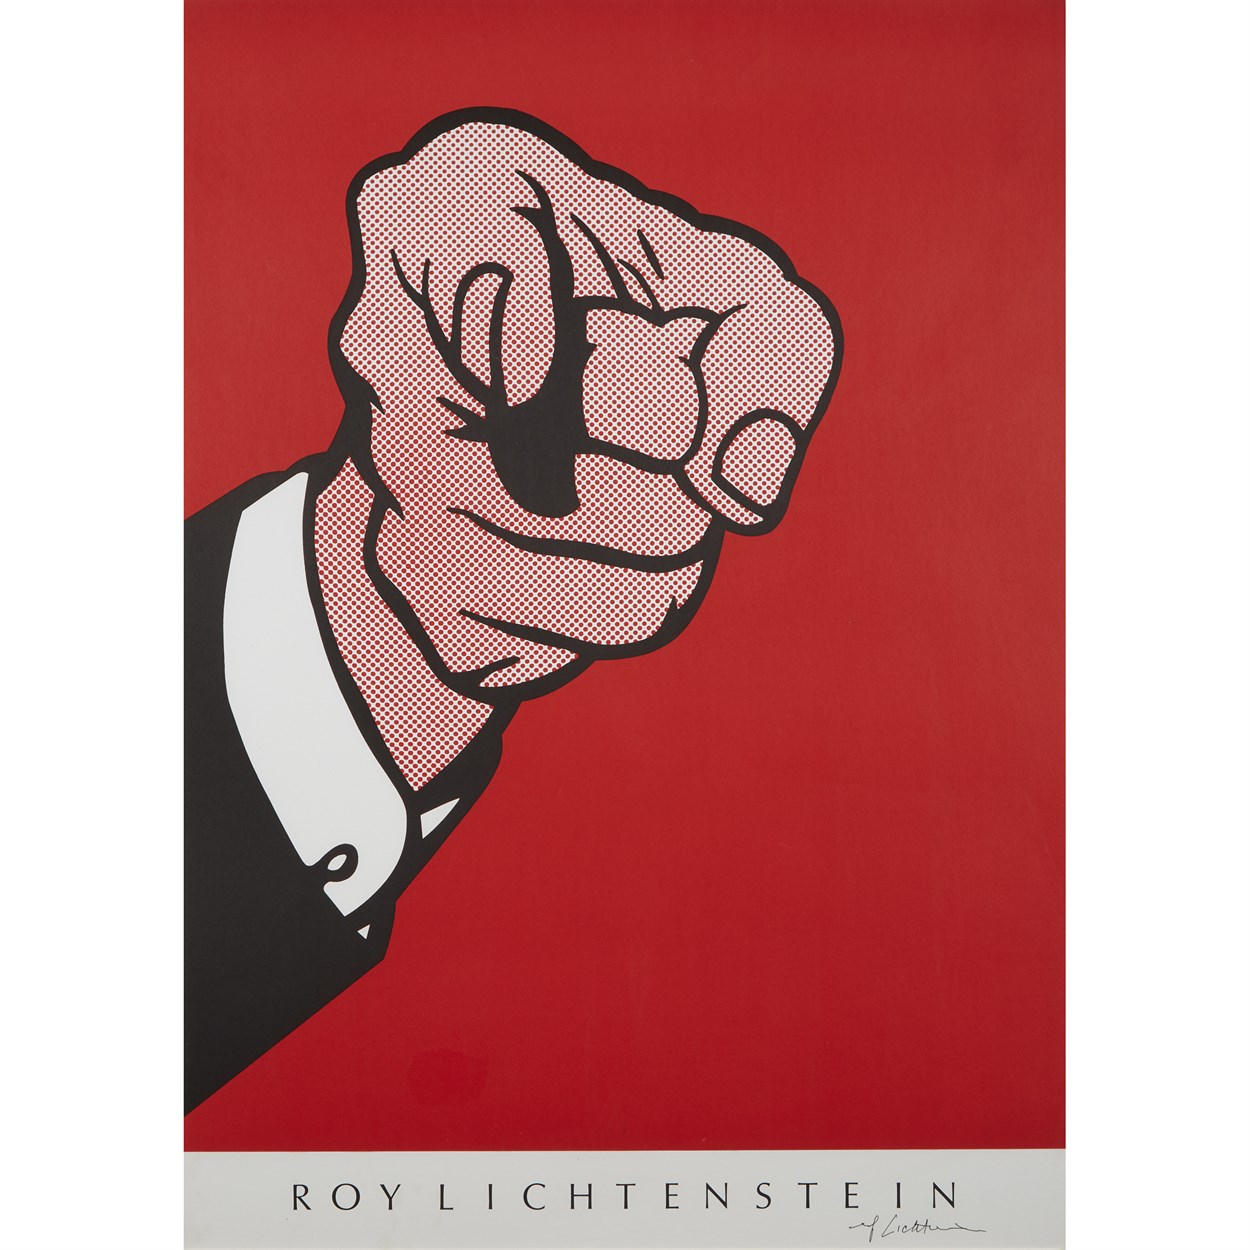 Lot 143 - After Roy Lichtenstein (American, 1923-1997)